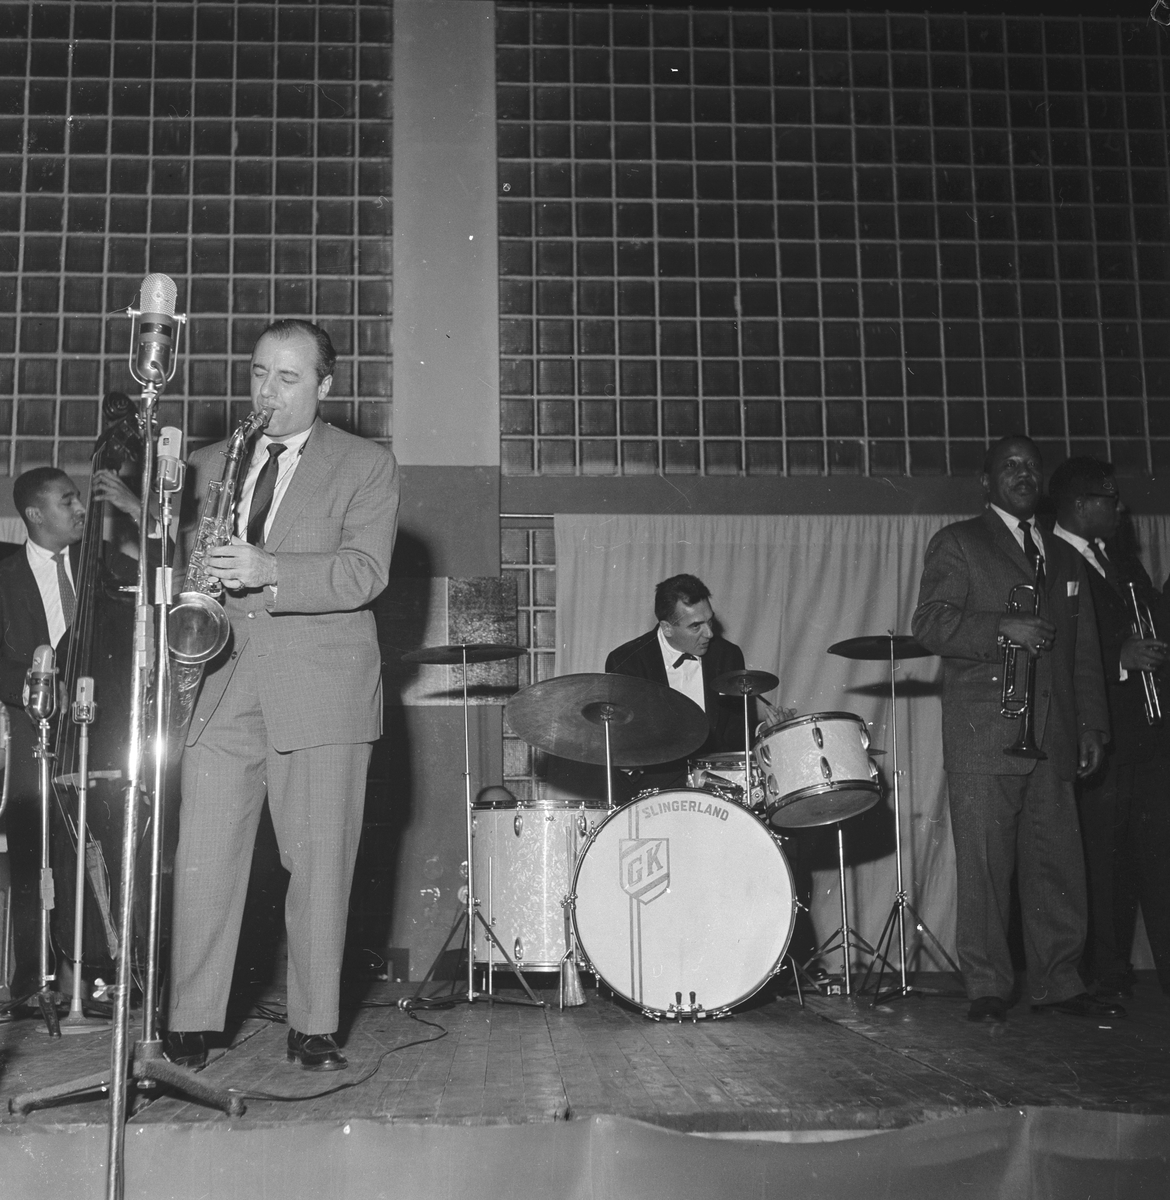 Fra jazzkonsert i Nordstrandhallen. Jazz at the Philharmonic. Fotografert 20. februar 1956.